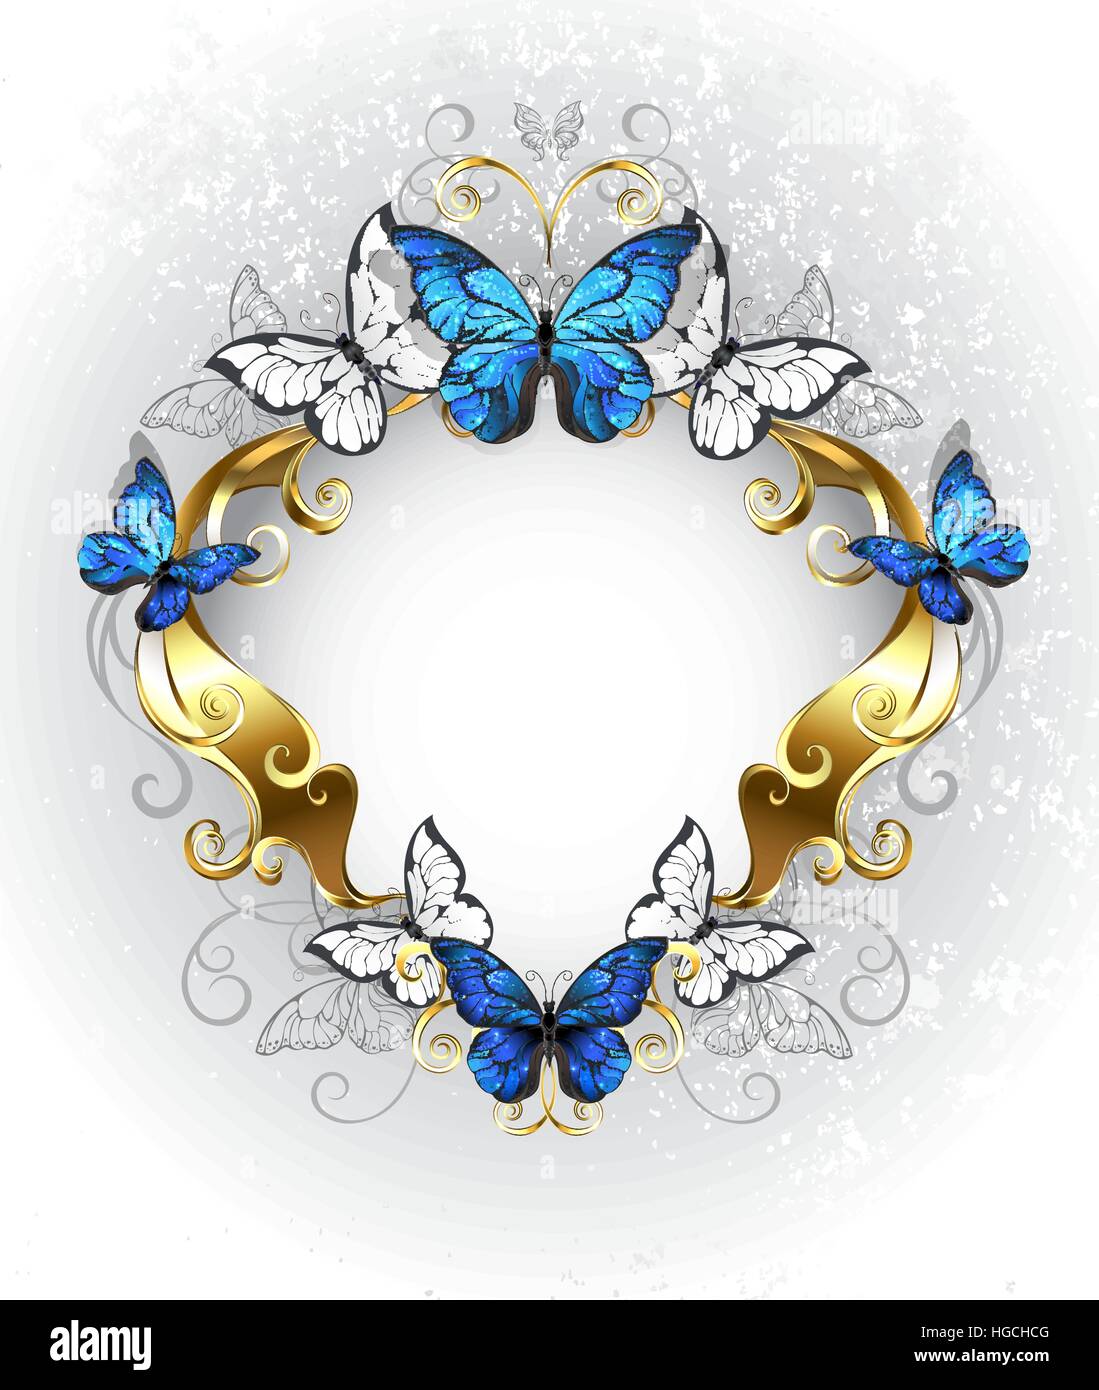 Schmuck, gold, gemustert, Banner mit blauen und weißen Schmetterlinge Morpho auf einem strukturellen Hintergrund. Morpho. Design mit blauer Schmetterlinge Morpho. Stock Vektor